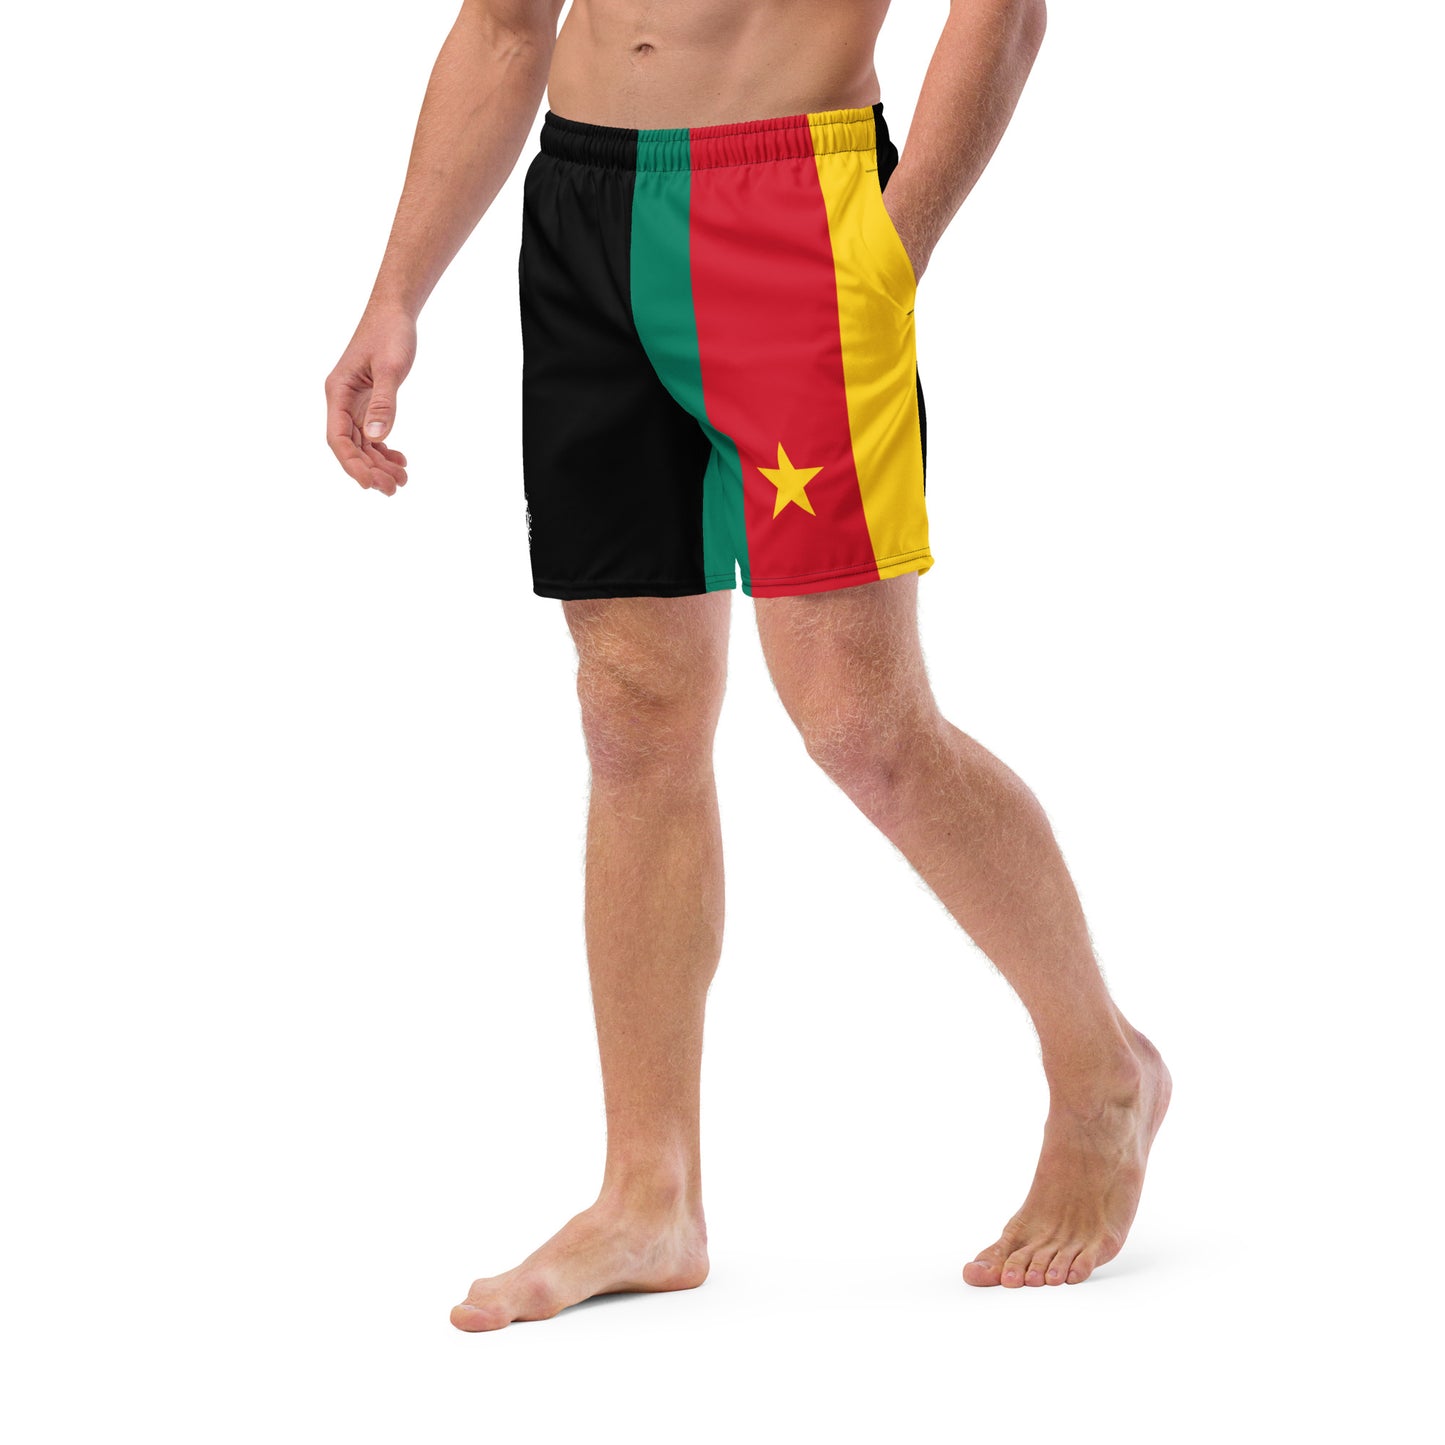 Cameroon Men's Swim Trunks